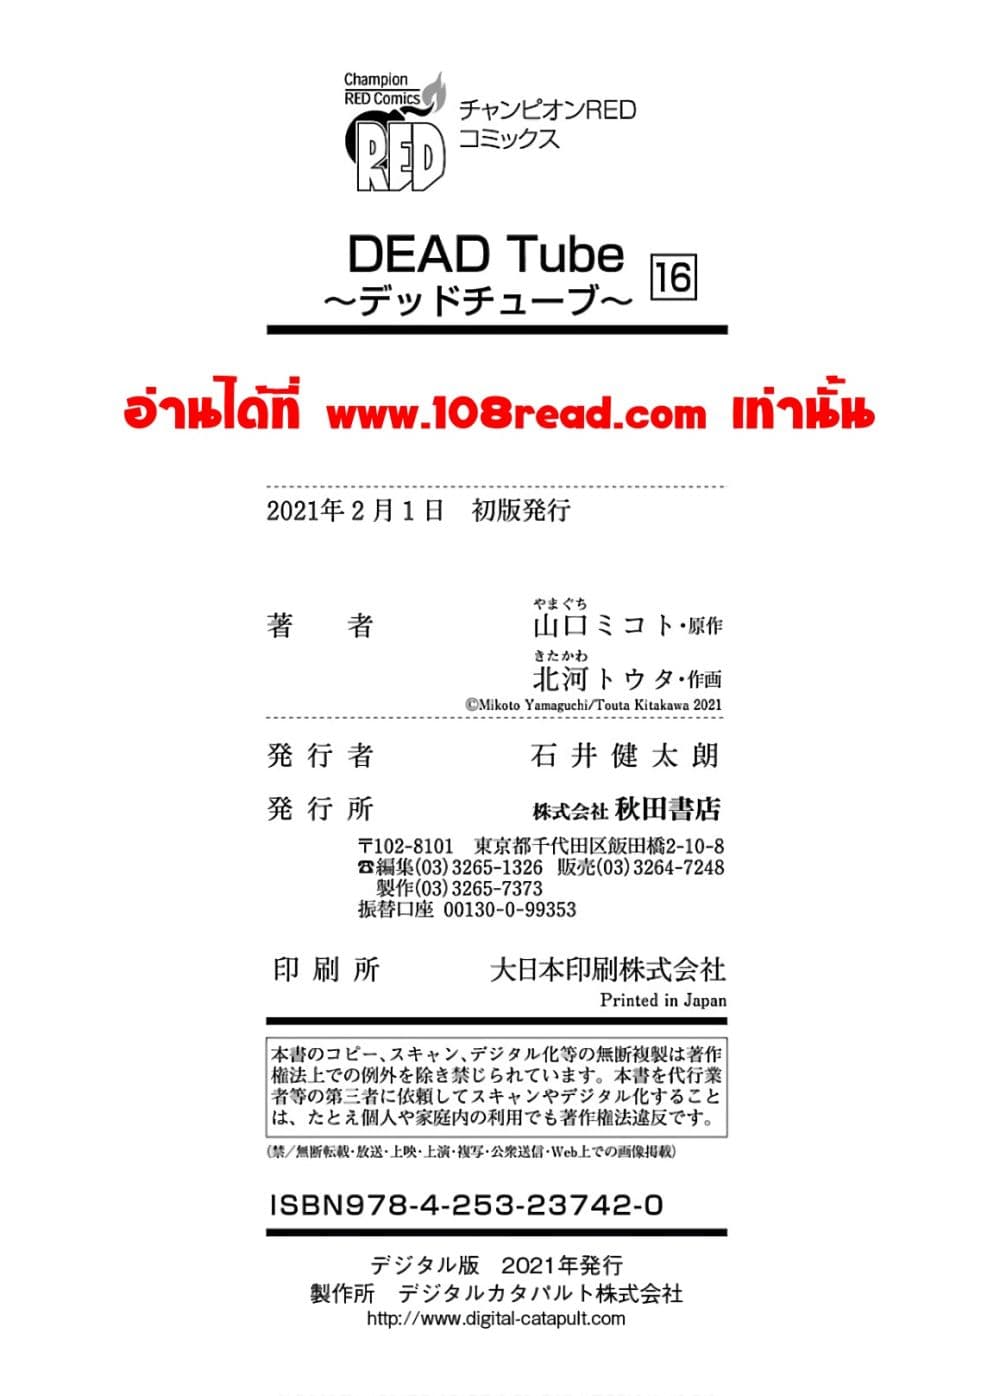 Dead Tube 66-66